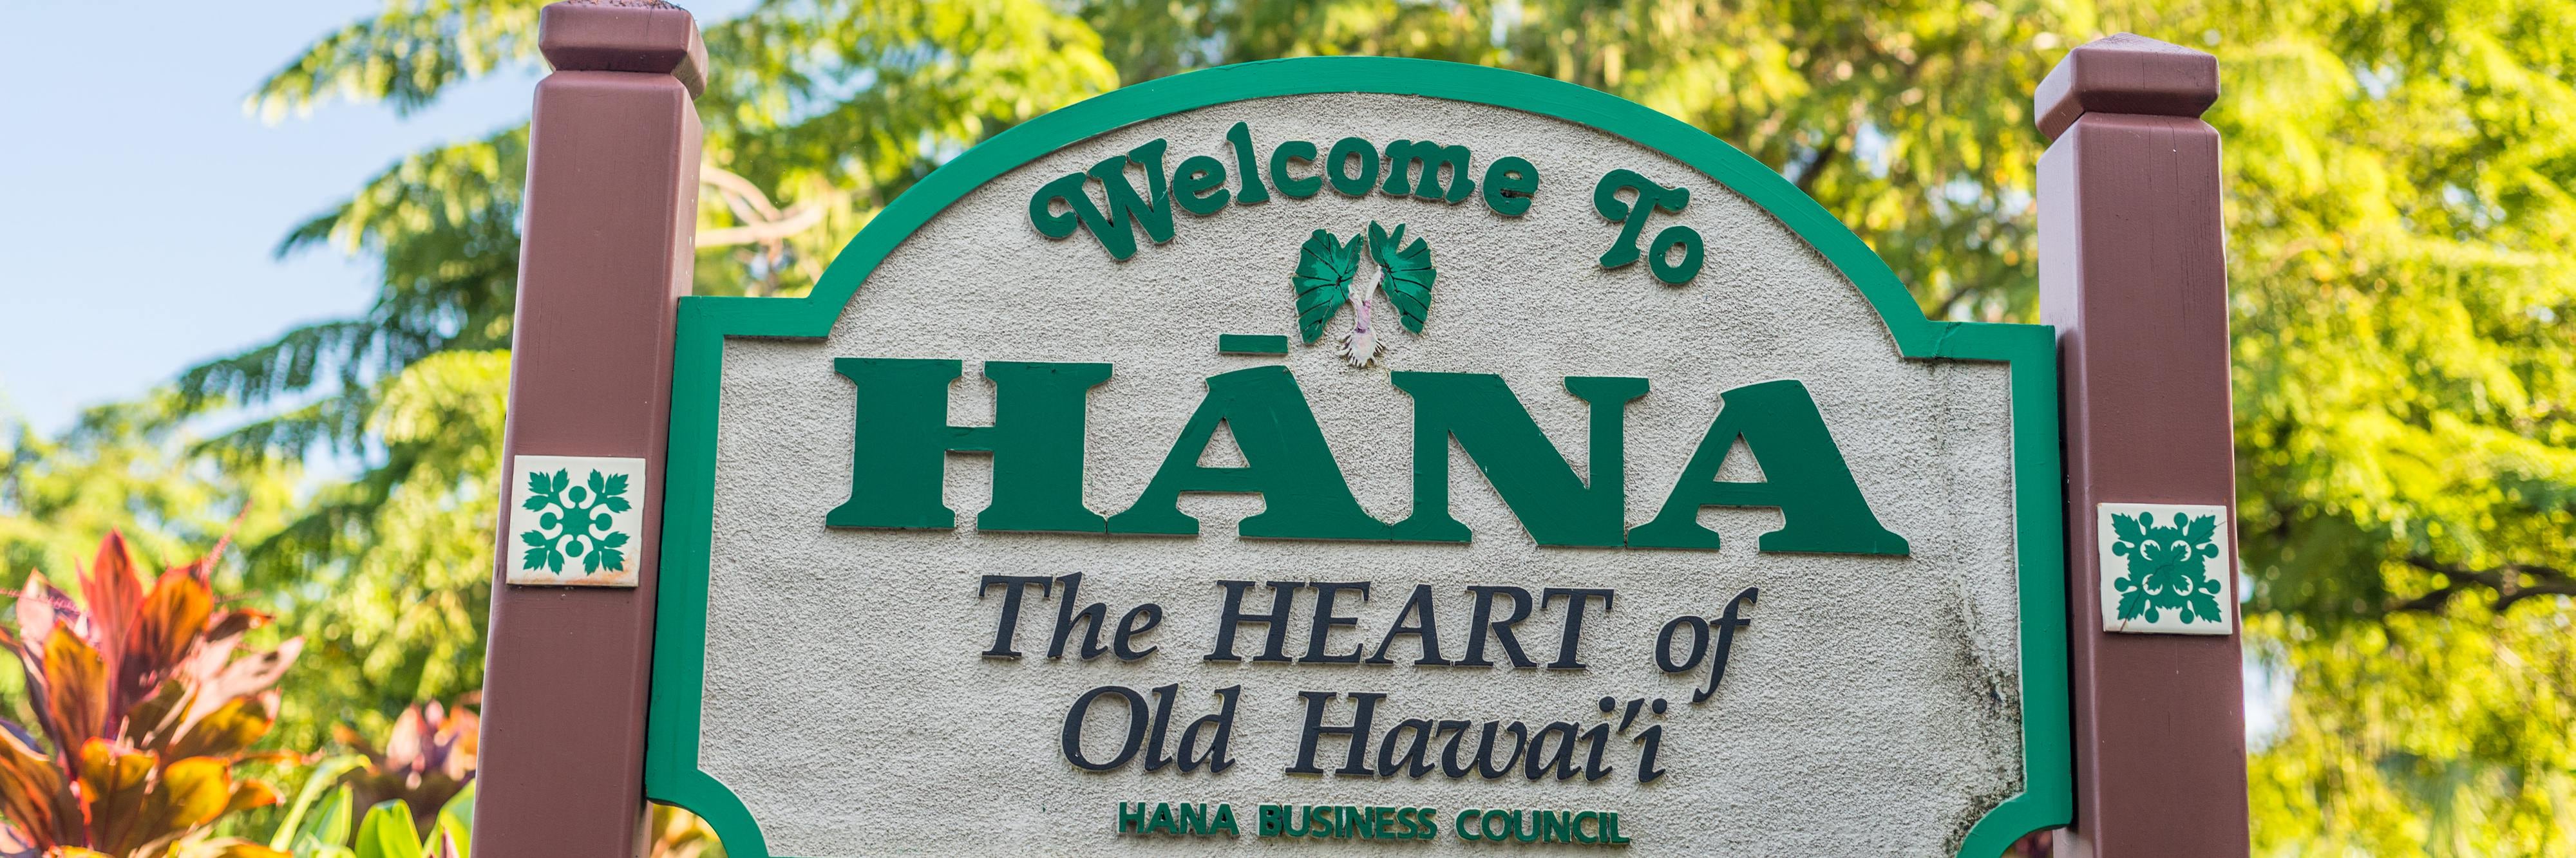 Hana The Heart of Old Hawaii sign